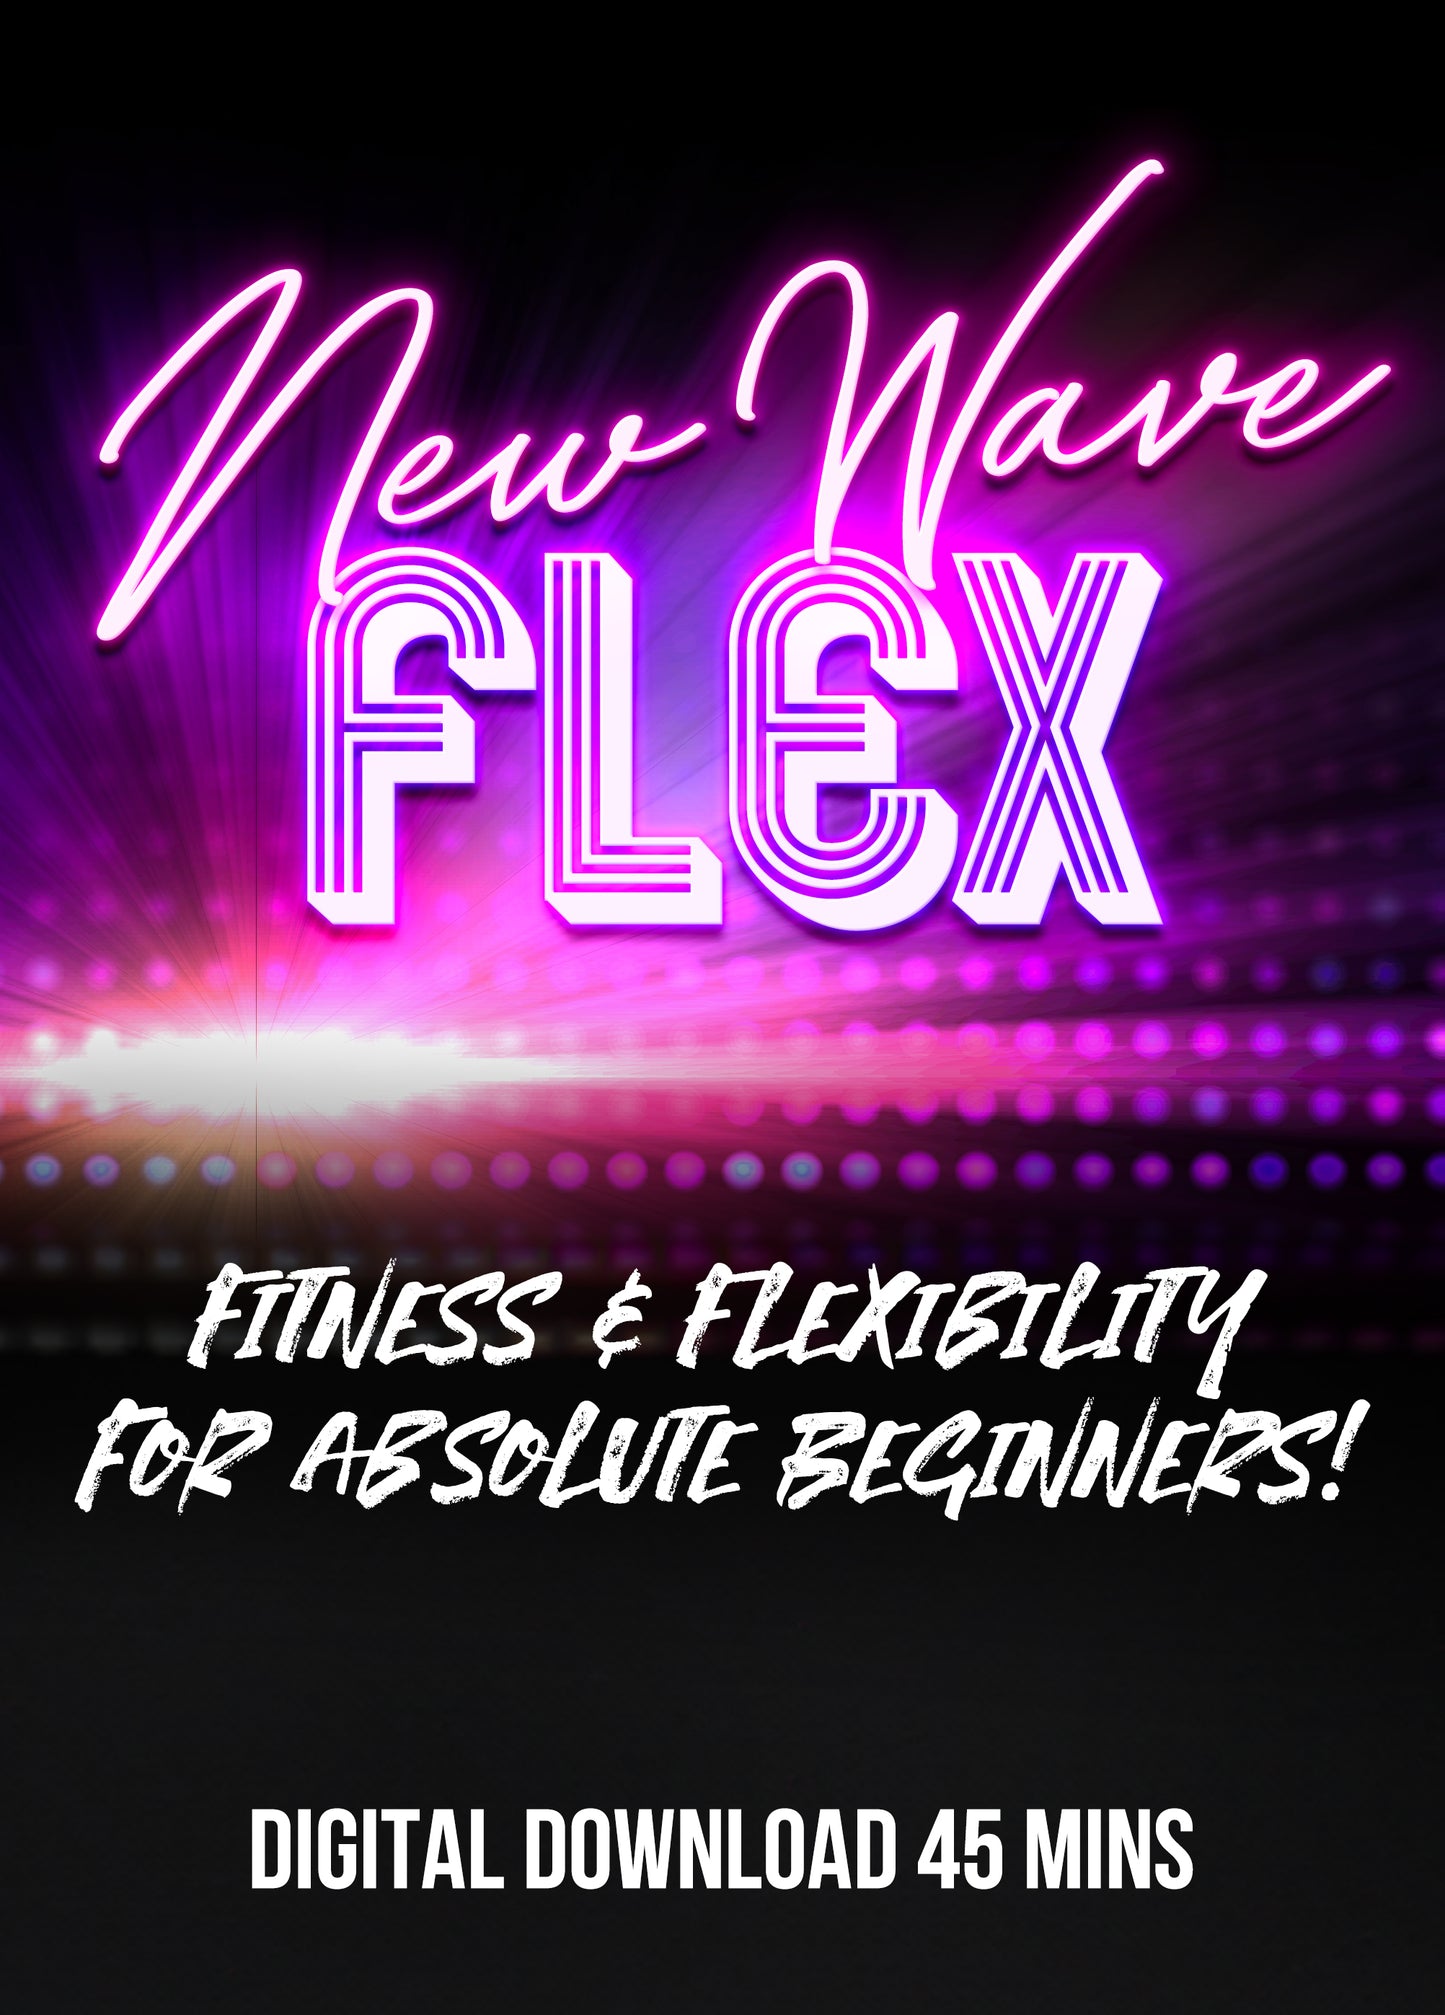 New Wave Flex Fitness & Flexibility with Cleo (Digital Download)